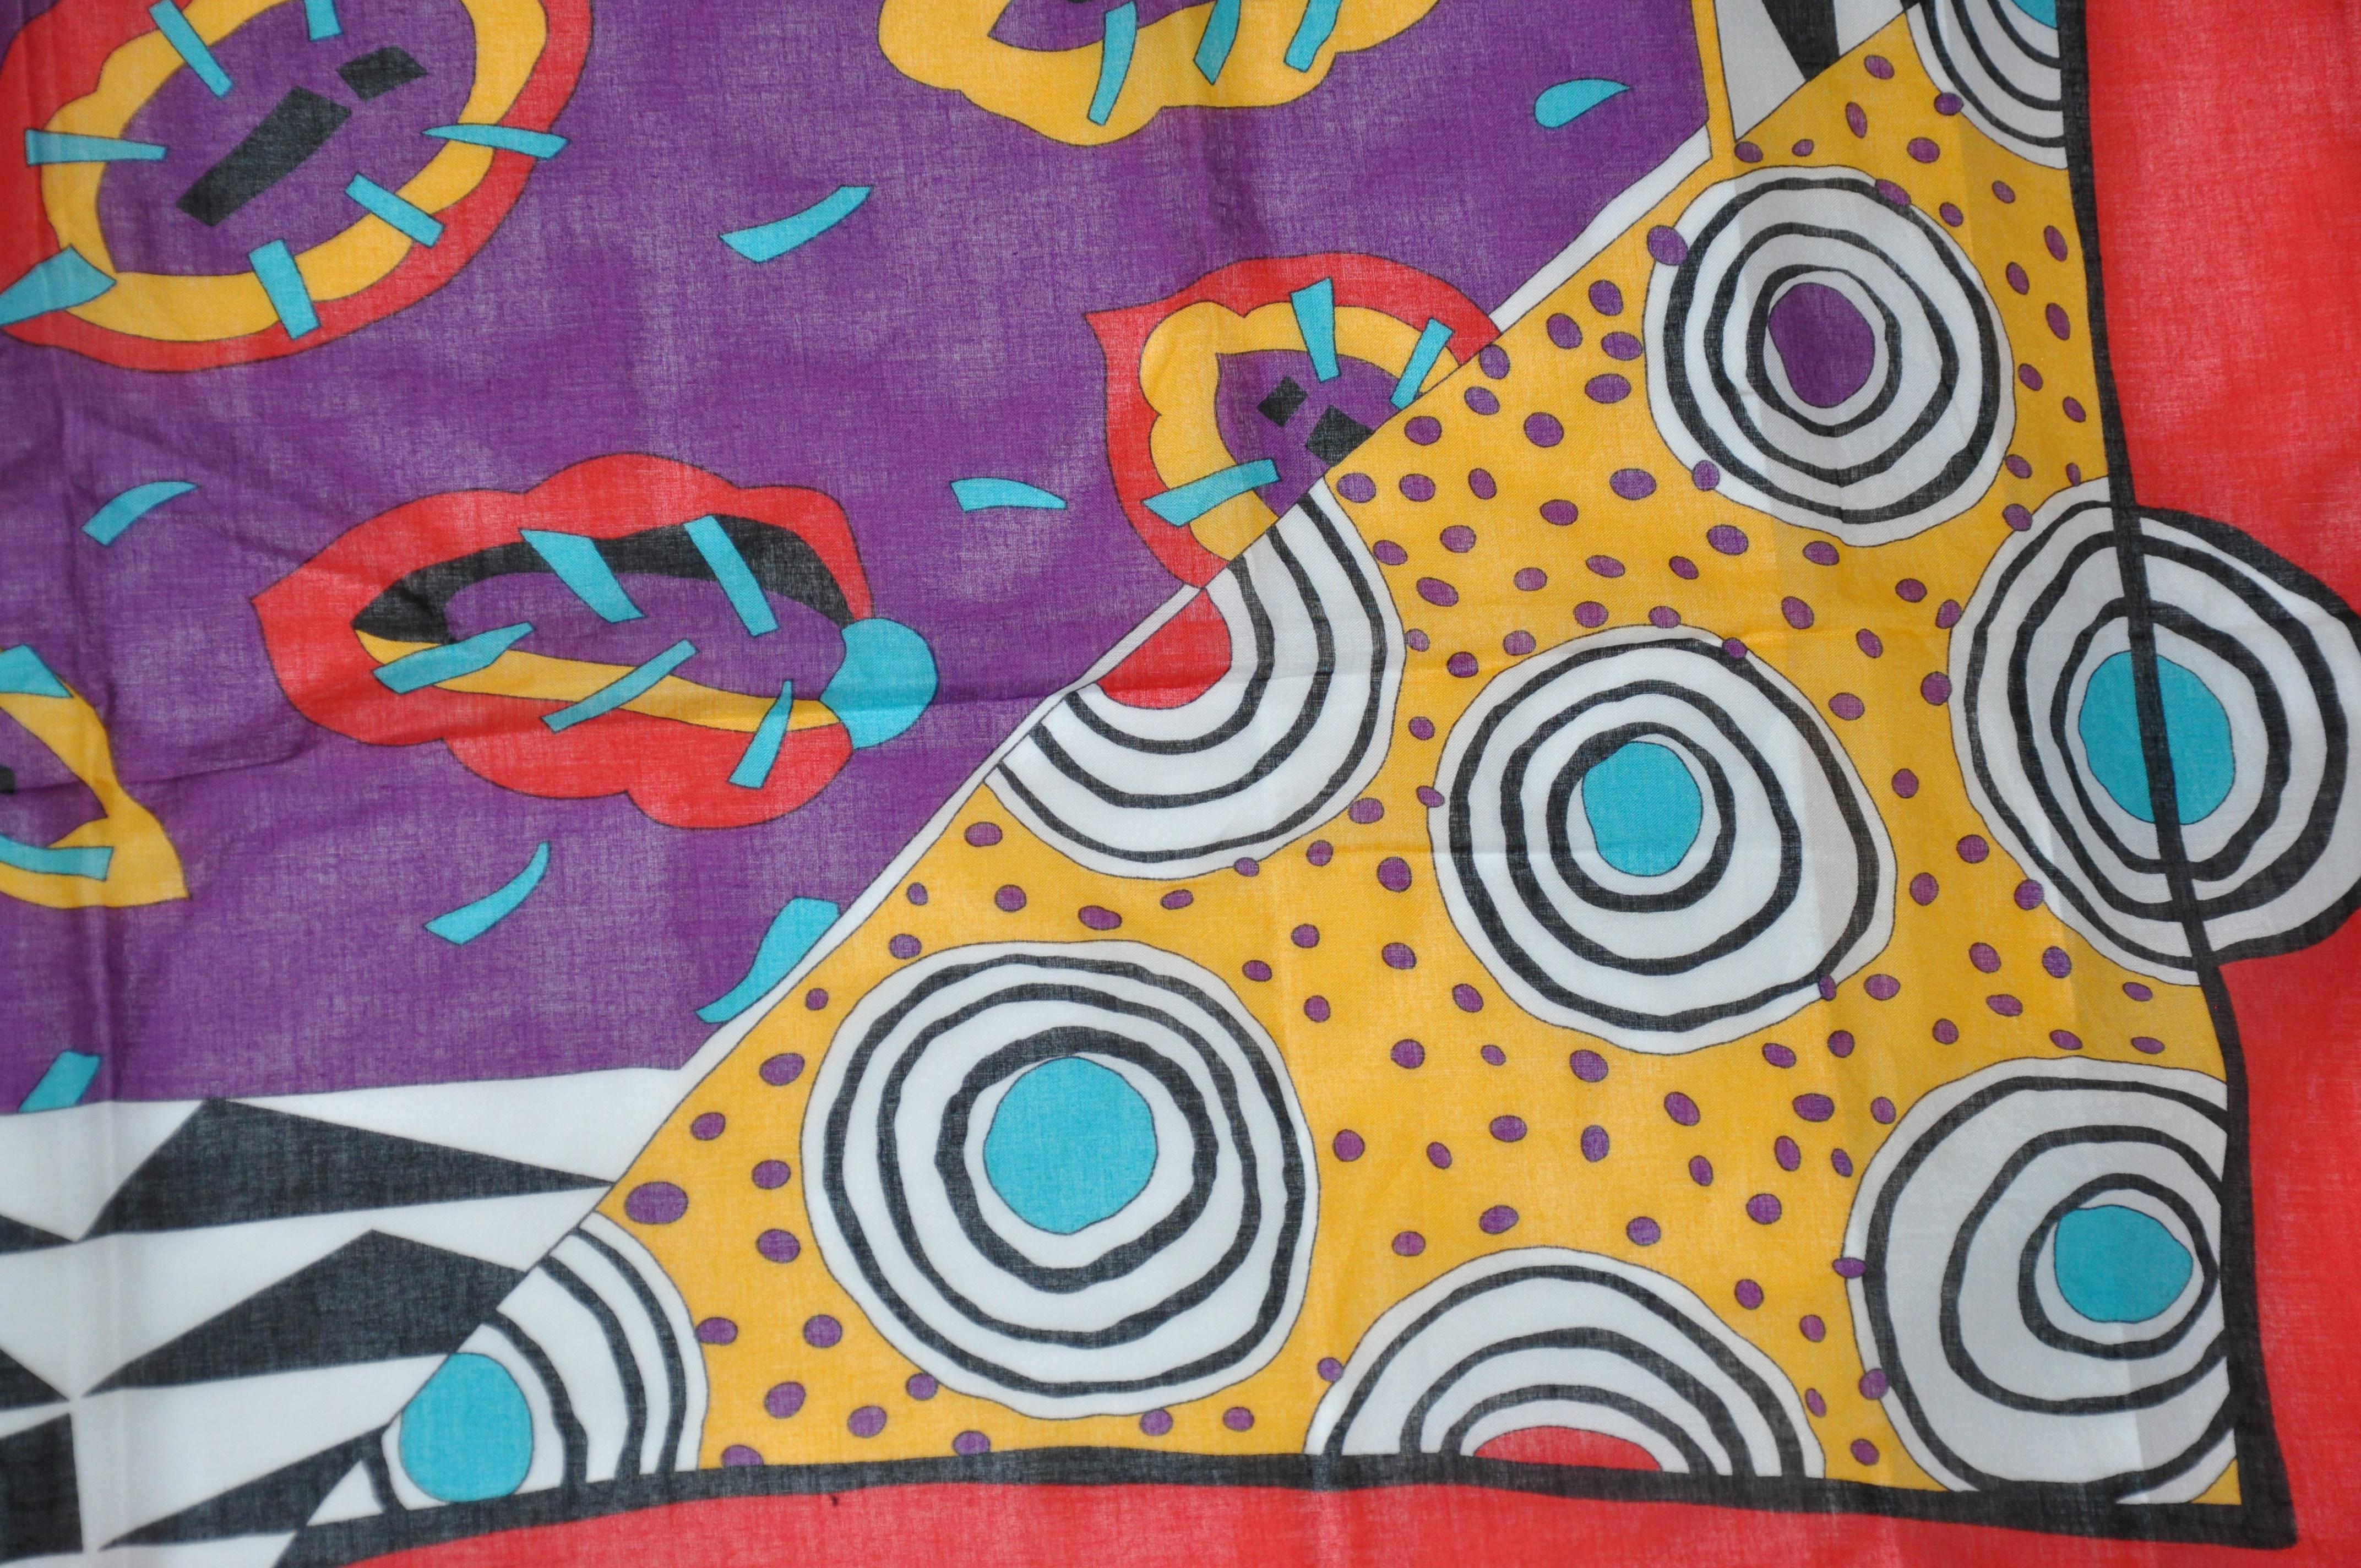      L'écharpe en coton de Ginnie Johansen, merveilleusement colorée et fantaisiste, mesure 32 pouces sur 33 pouces. Bords roulés, et fabriqué au Japon.